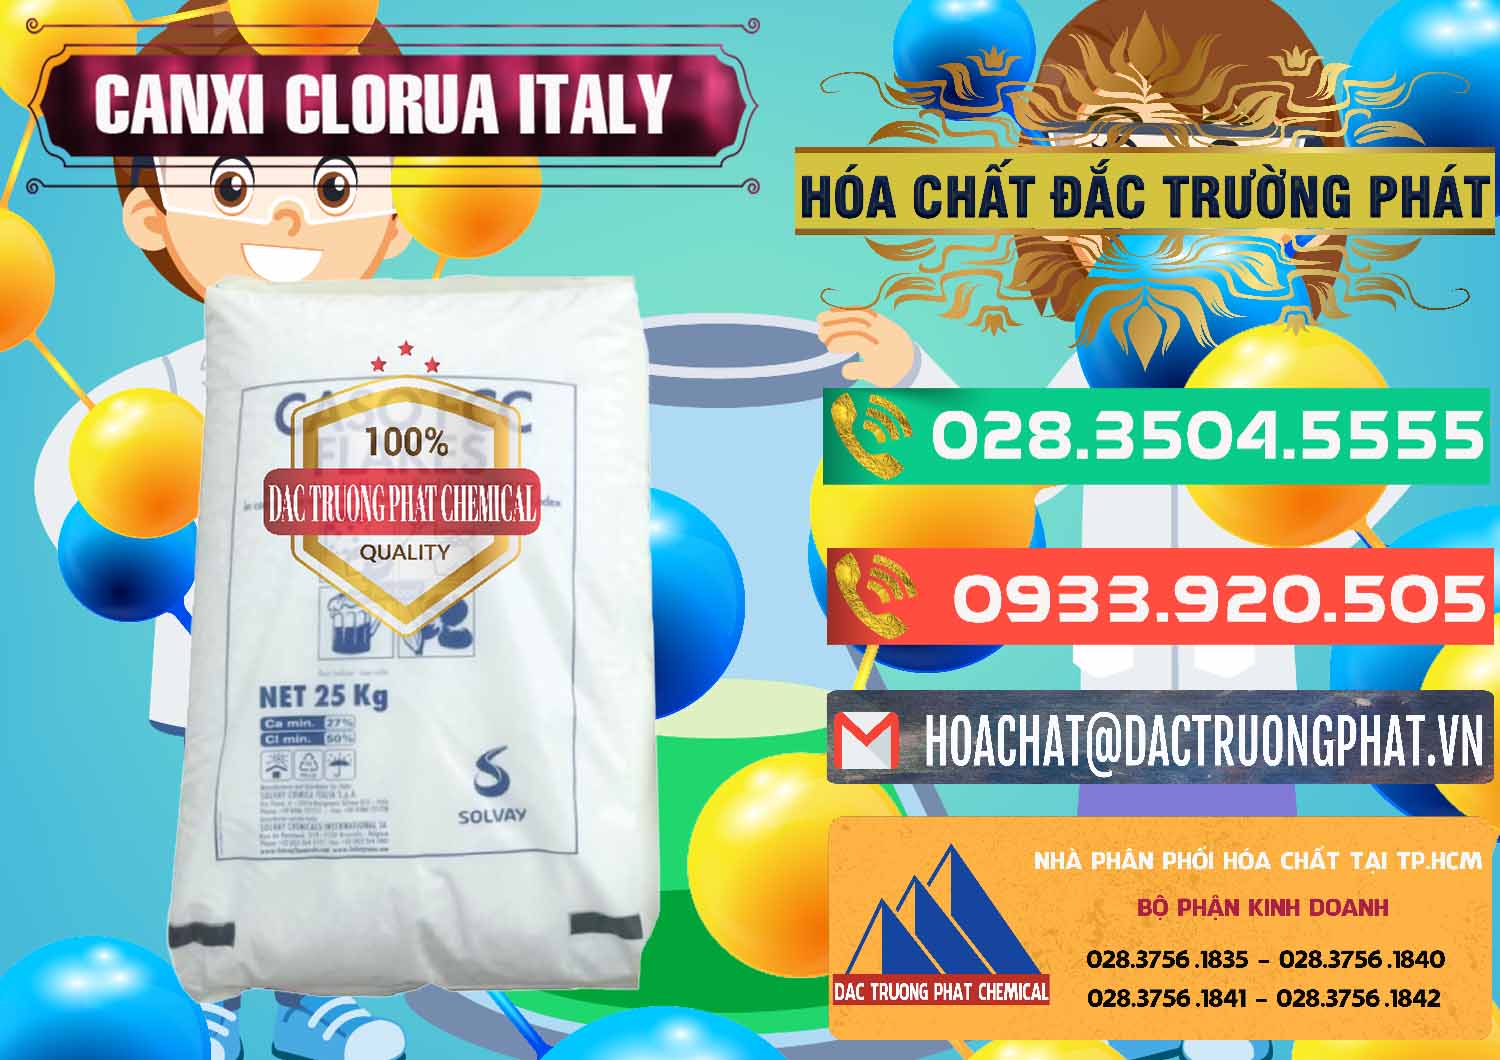 Nhà phân phối & bán CaCl2 – Canxi Clorua Food Grade Ý Italy - 0435 - Cty kinh doanh & cung cấp hóa chất tại TP.HCM - congtyhoachat.com.vn